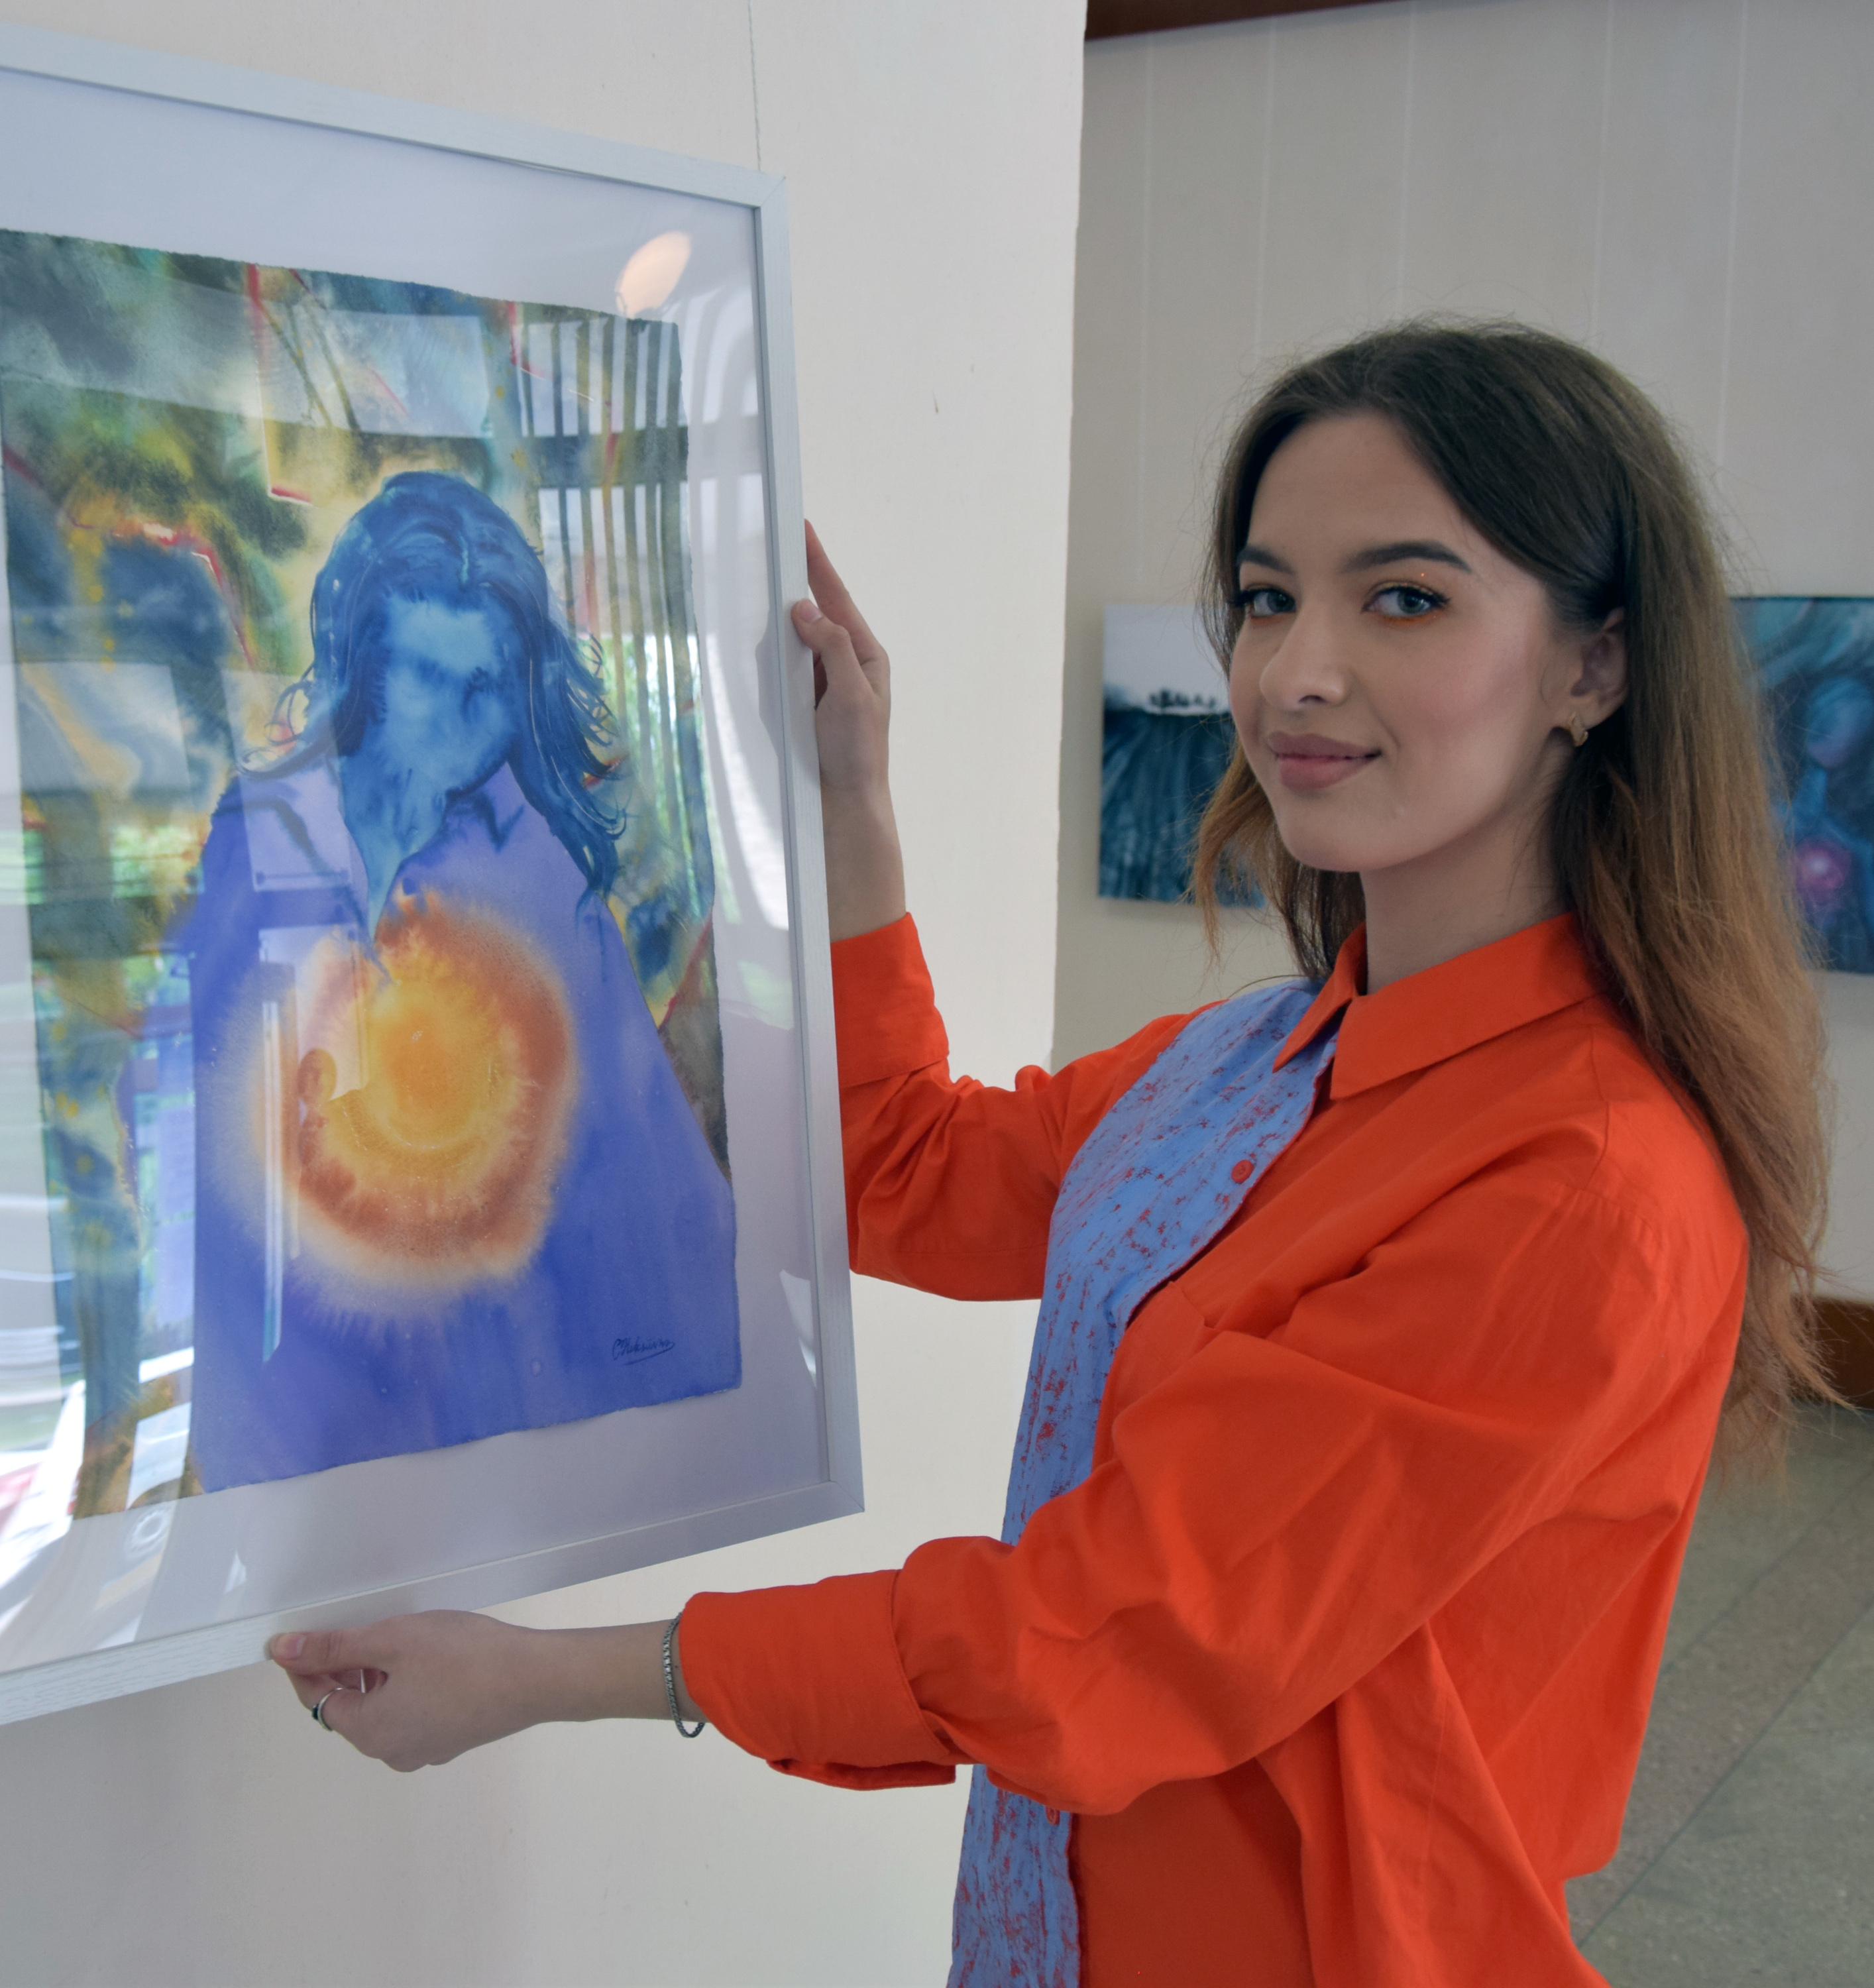 Організаторка, кураторка та учасниця виставки Олена Колєснік ознайомлює із власною картиною «Крах фальші». Фото автора